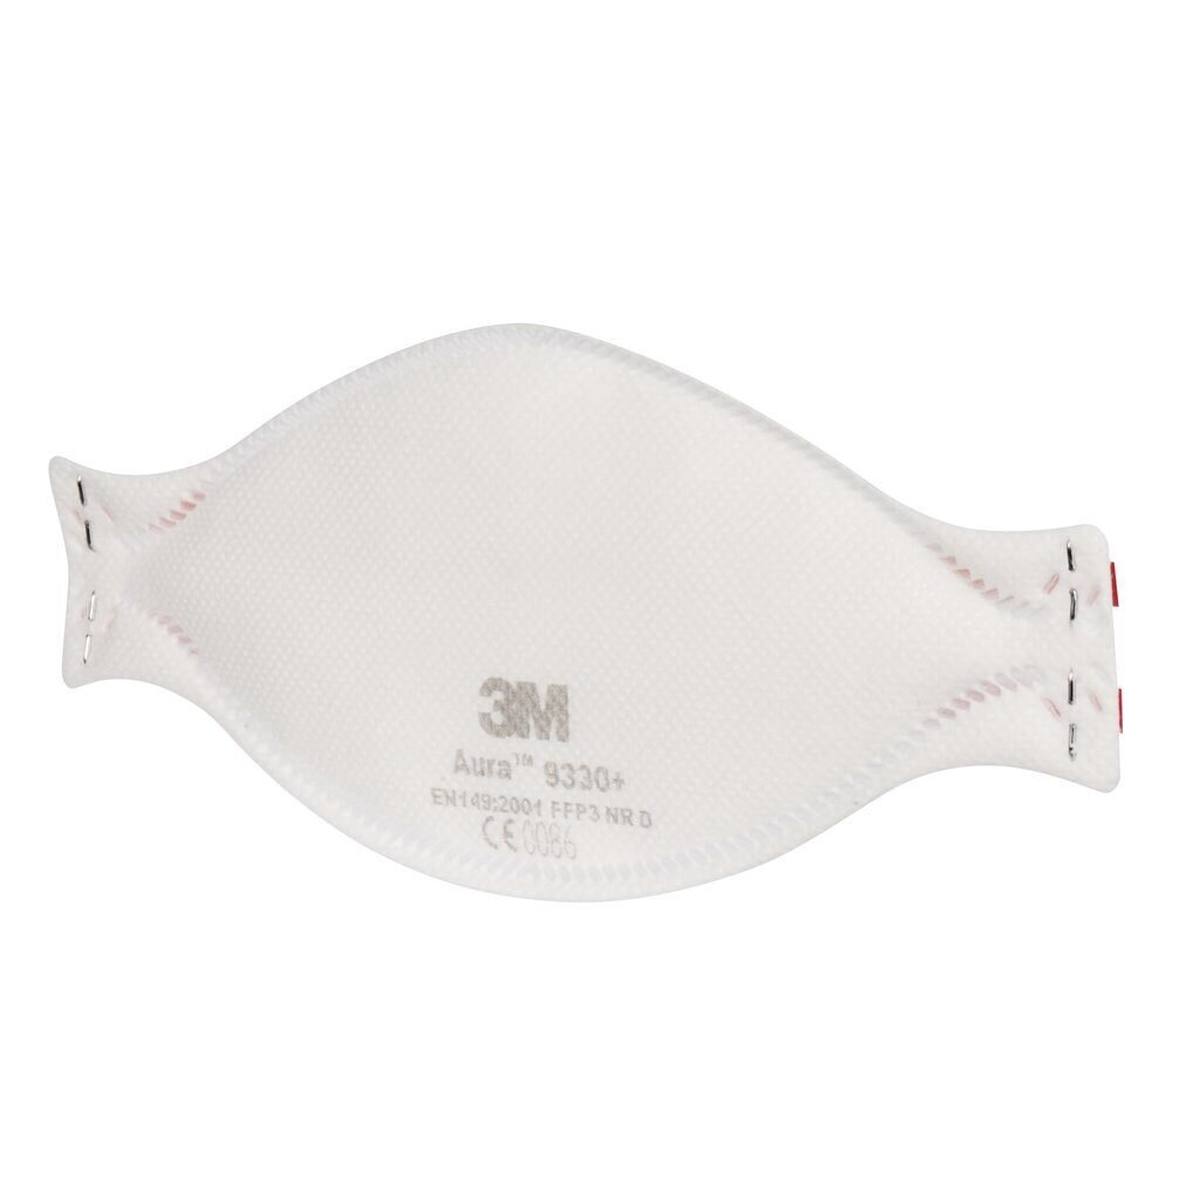 3M 9330+ Aura Atemschutzmaske FFP3, bis zum 30-fachen des Grenzwertes (hygienisch einzelverpackt)